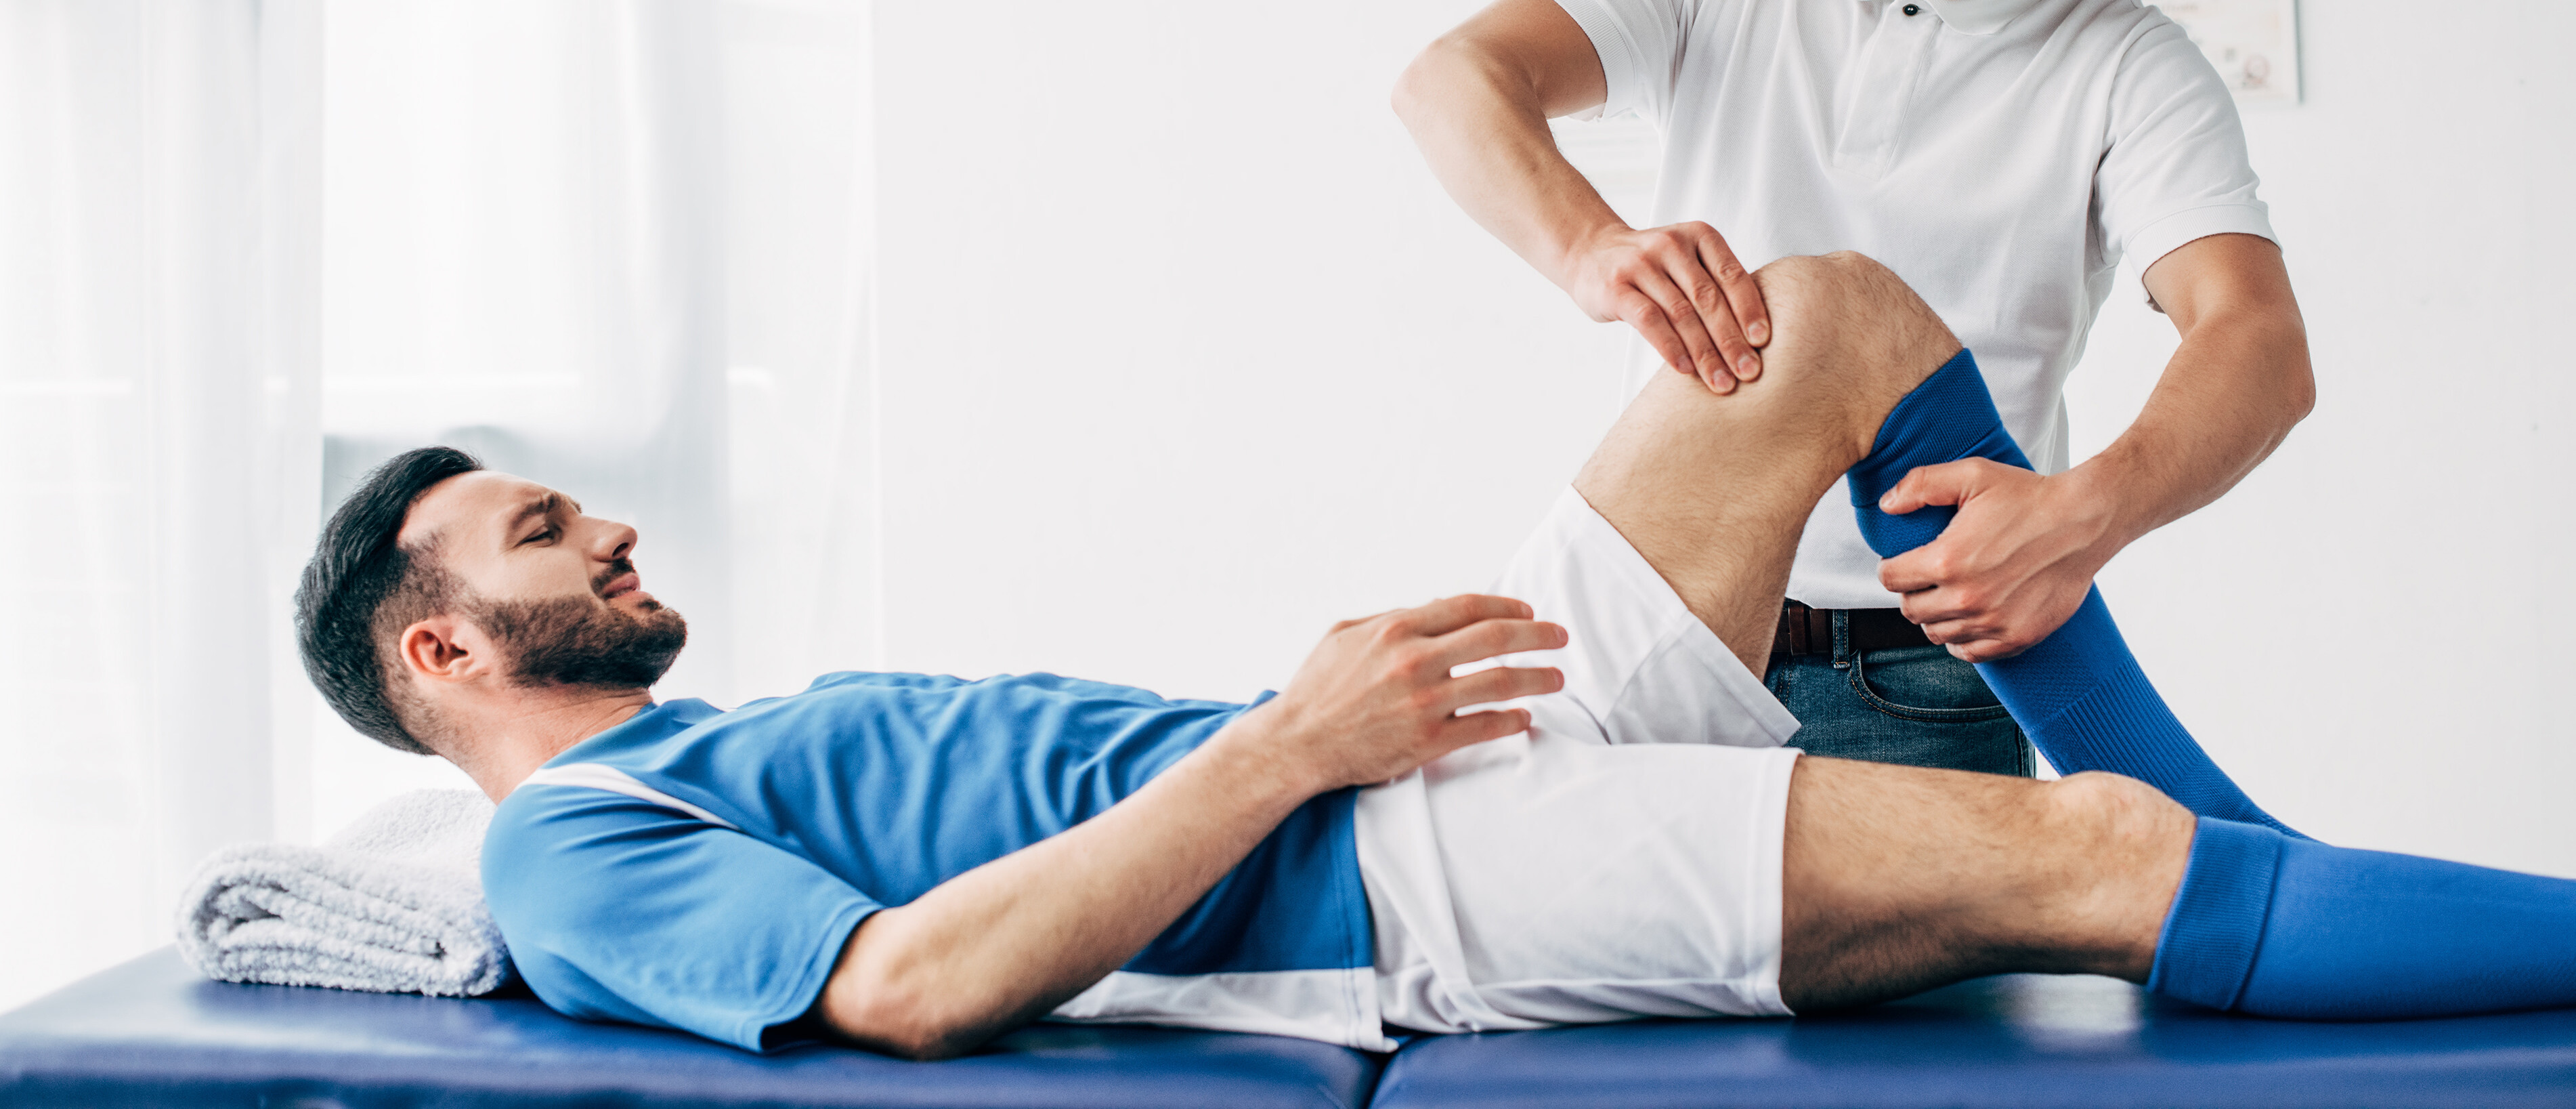 Ein Fussballspieler liegt mit einer Knieverletzung auf einem Untersuchungstisch und wird von einem Physiotherapeuten behandelt